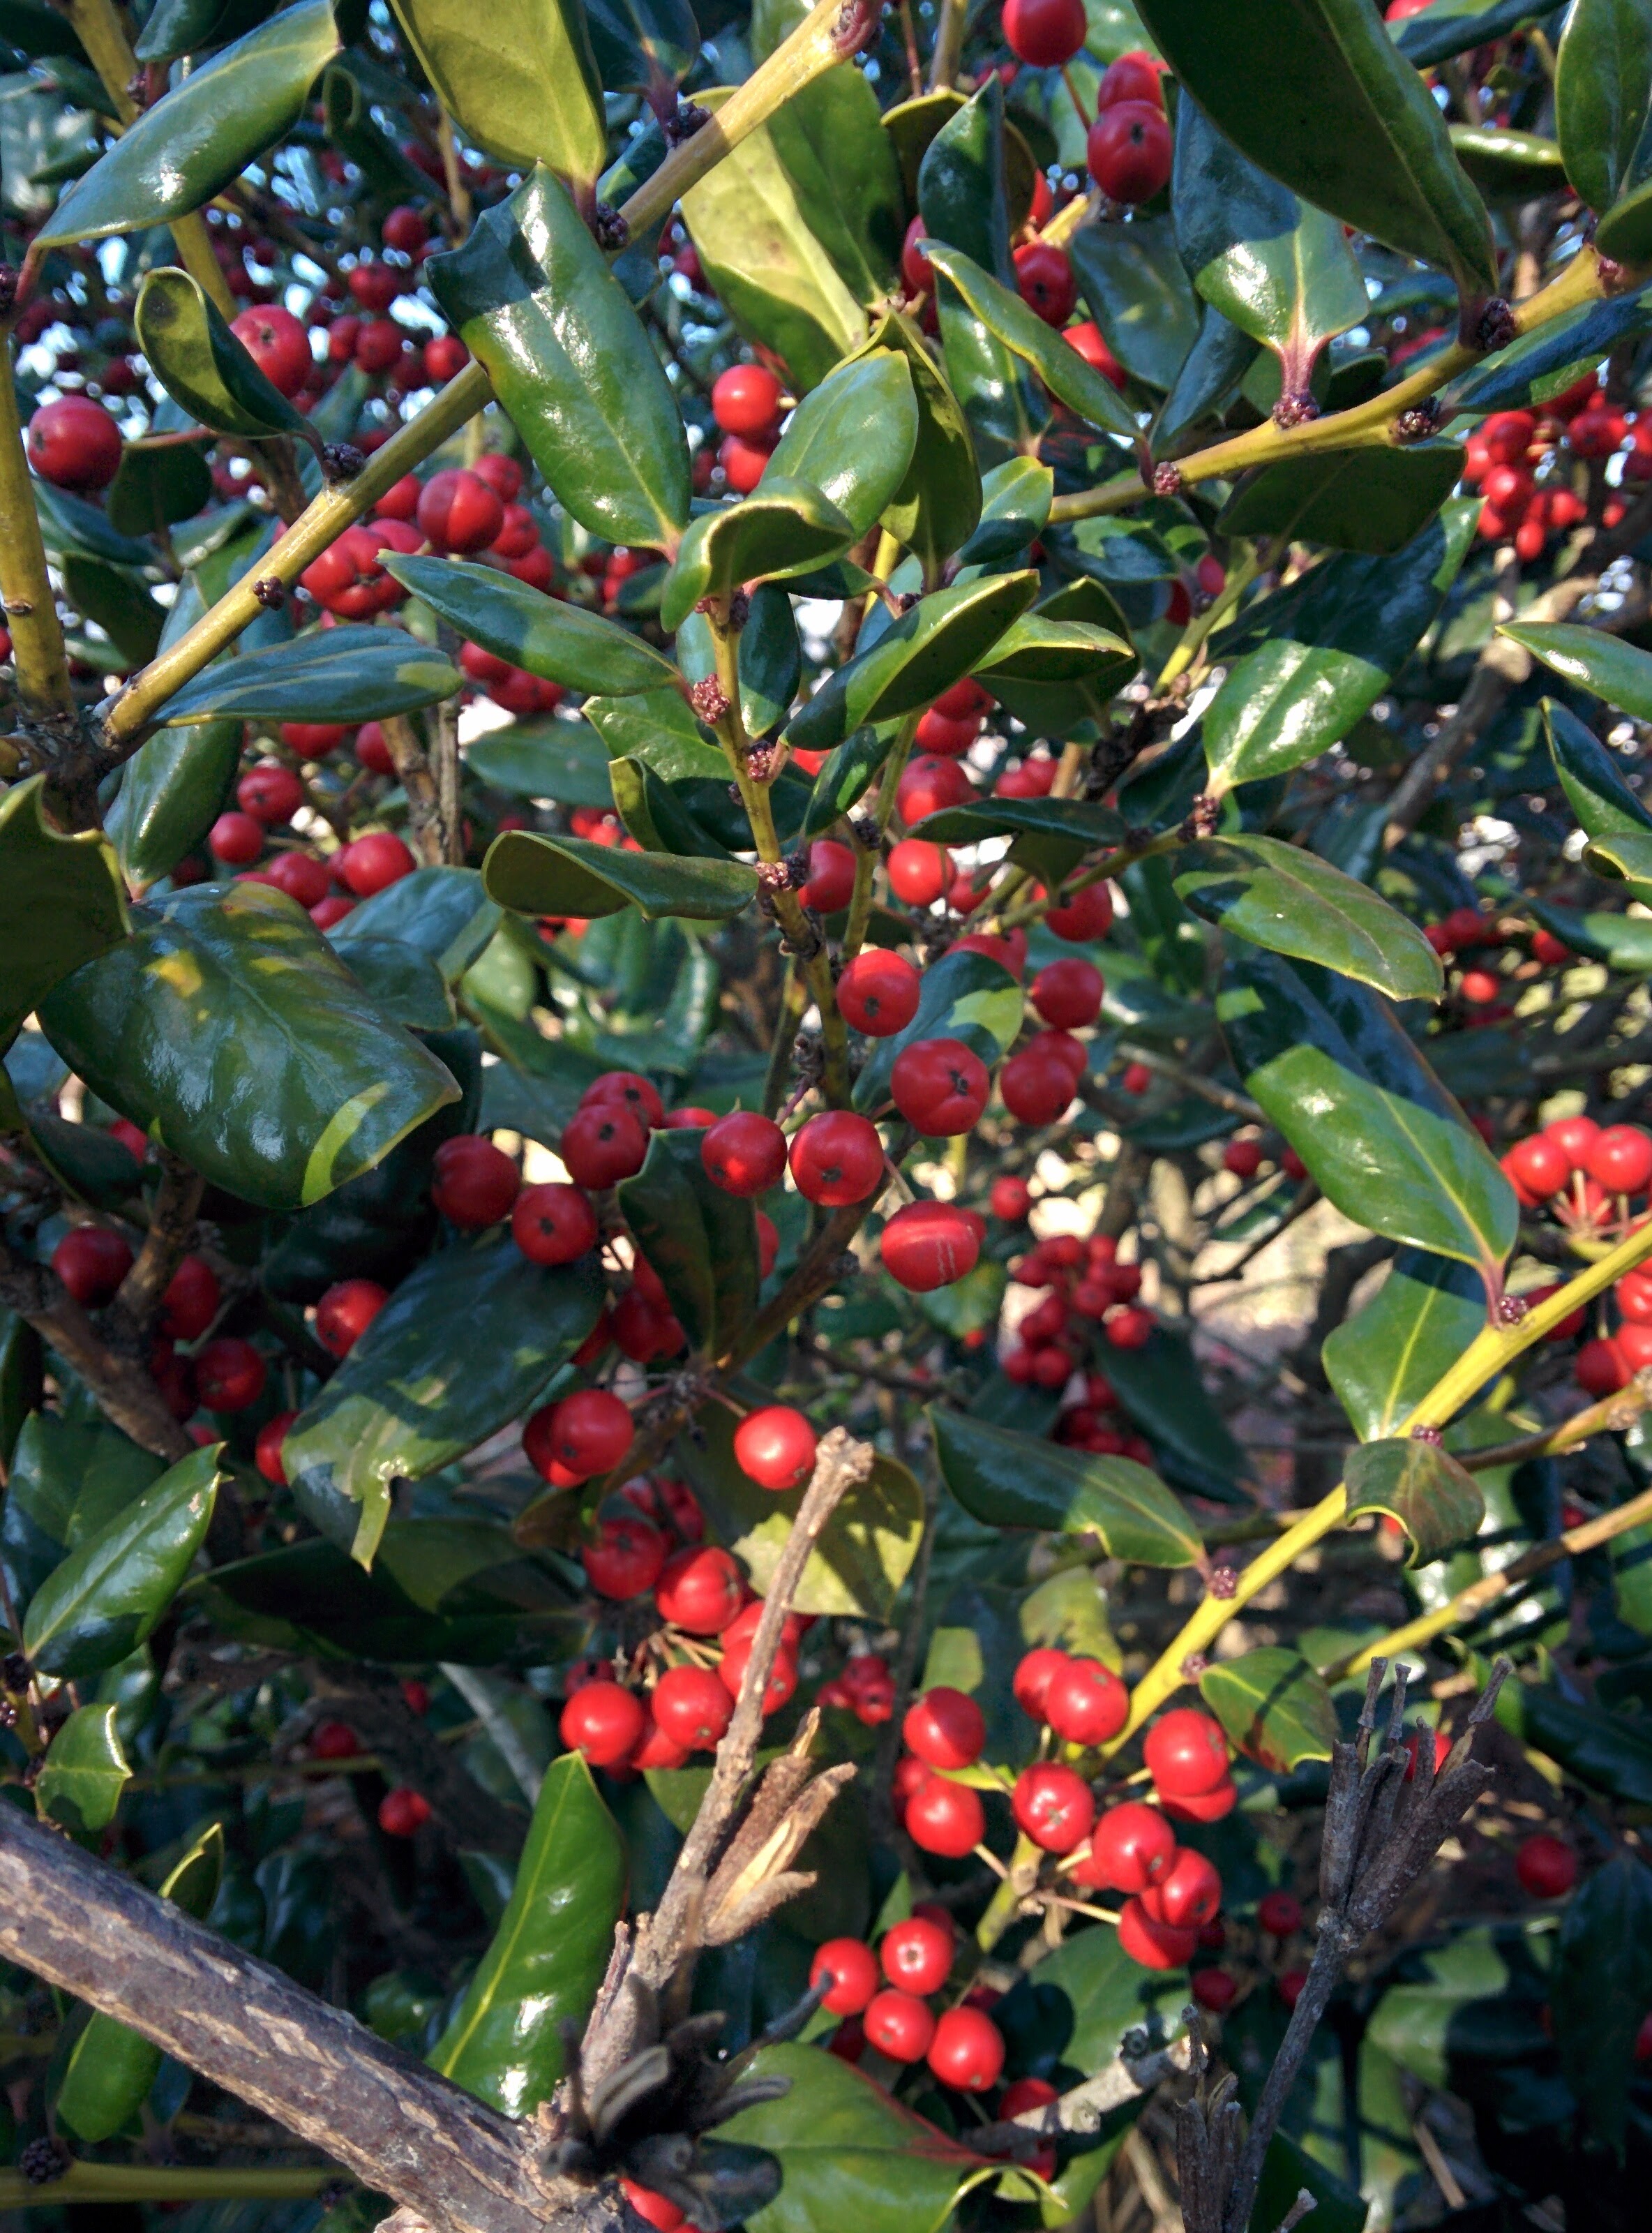 IMG_20151228_143145.jpg 붉은색 열매를 잔뜩 매단 호랑가시나무